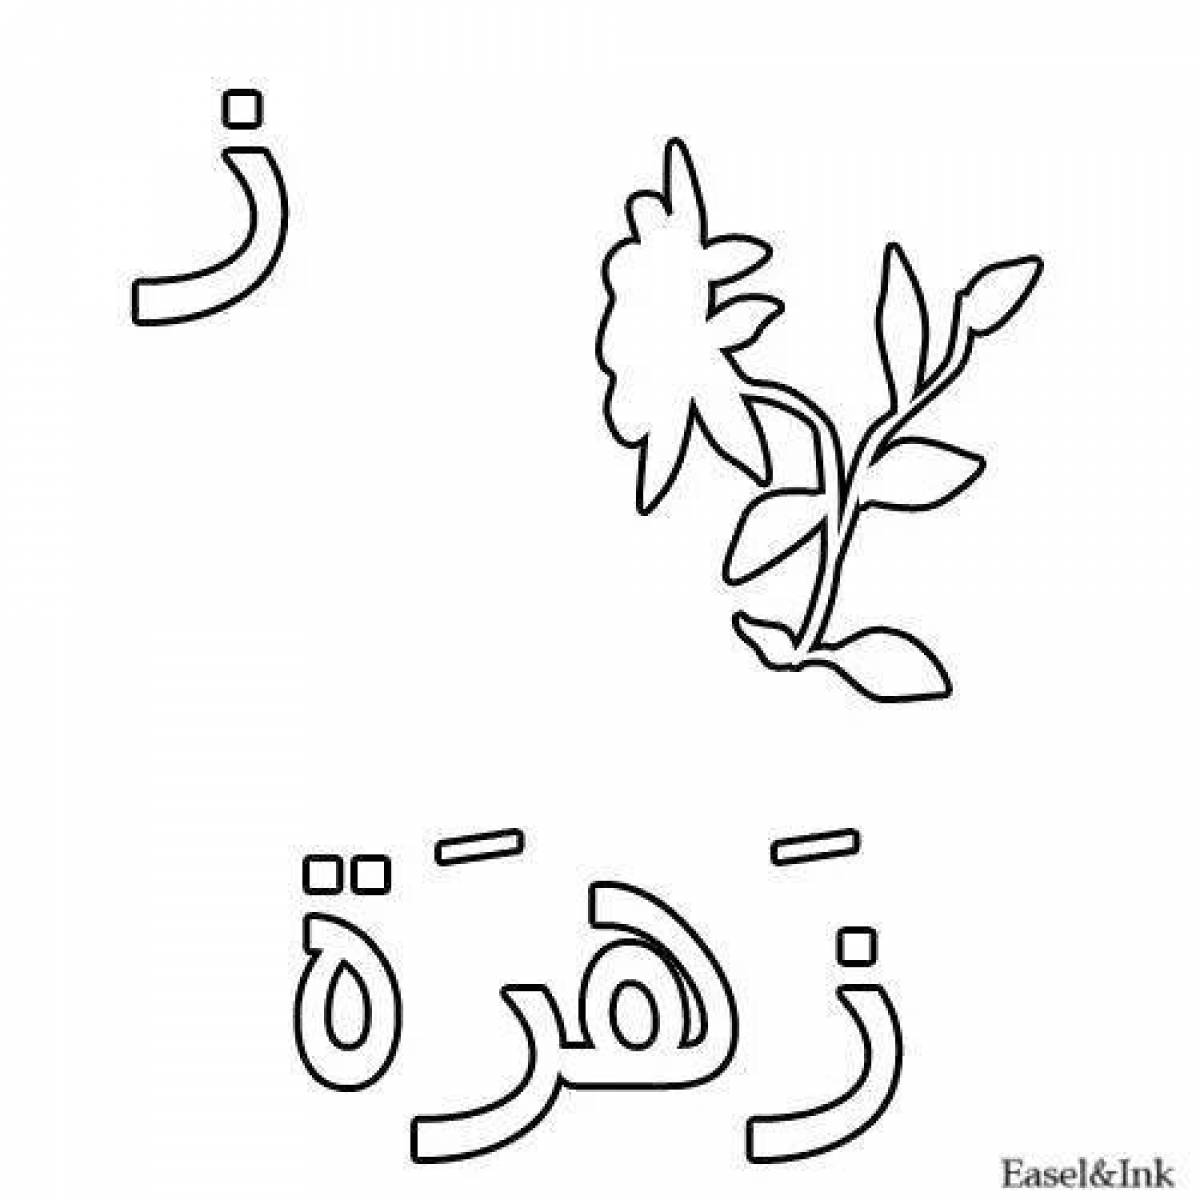 Привлекательная страница раскраски арабского алфавита